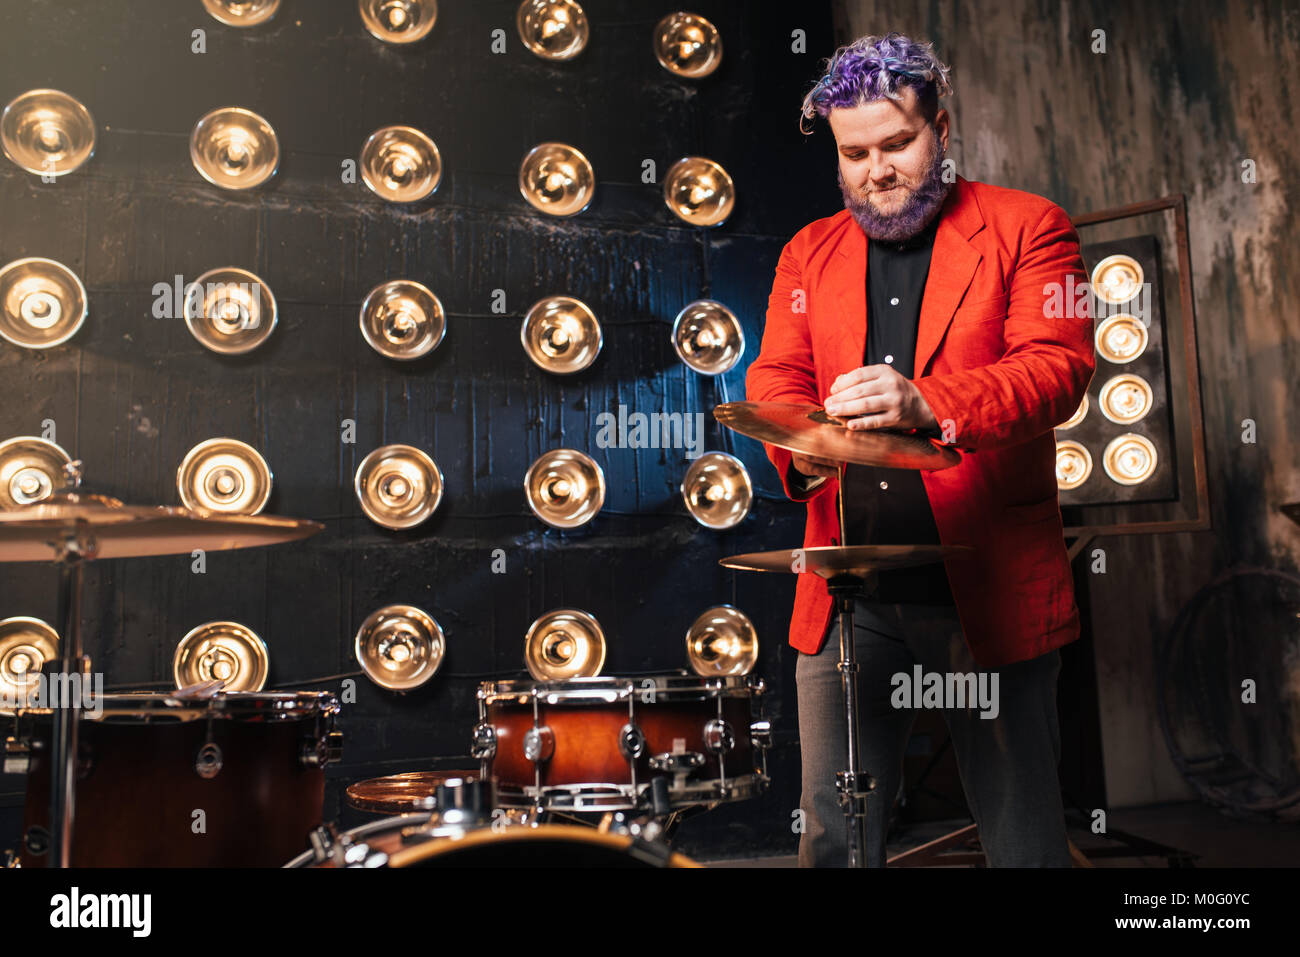 Batterista barbuto in tuta rossa sul palco con luci, in stile retrò. Esecutore musicale con i capelli colorati Foto Stock